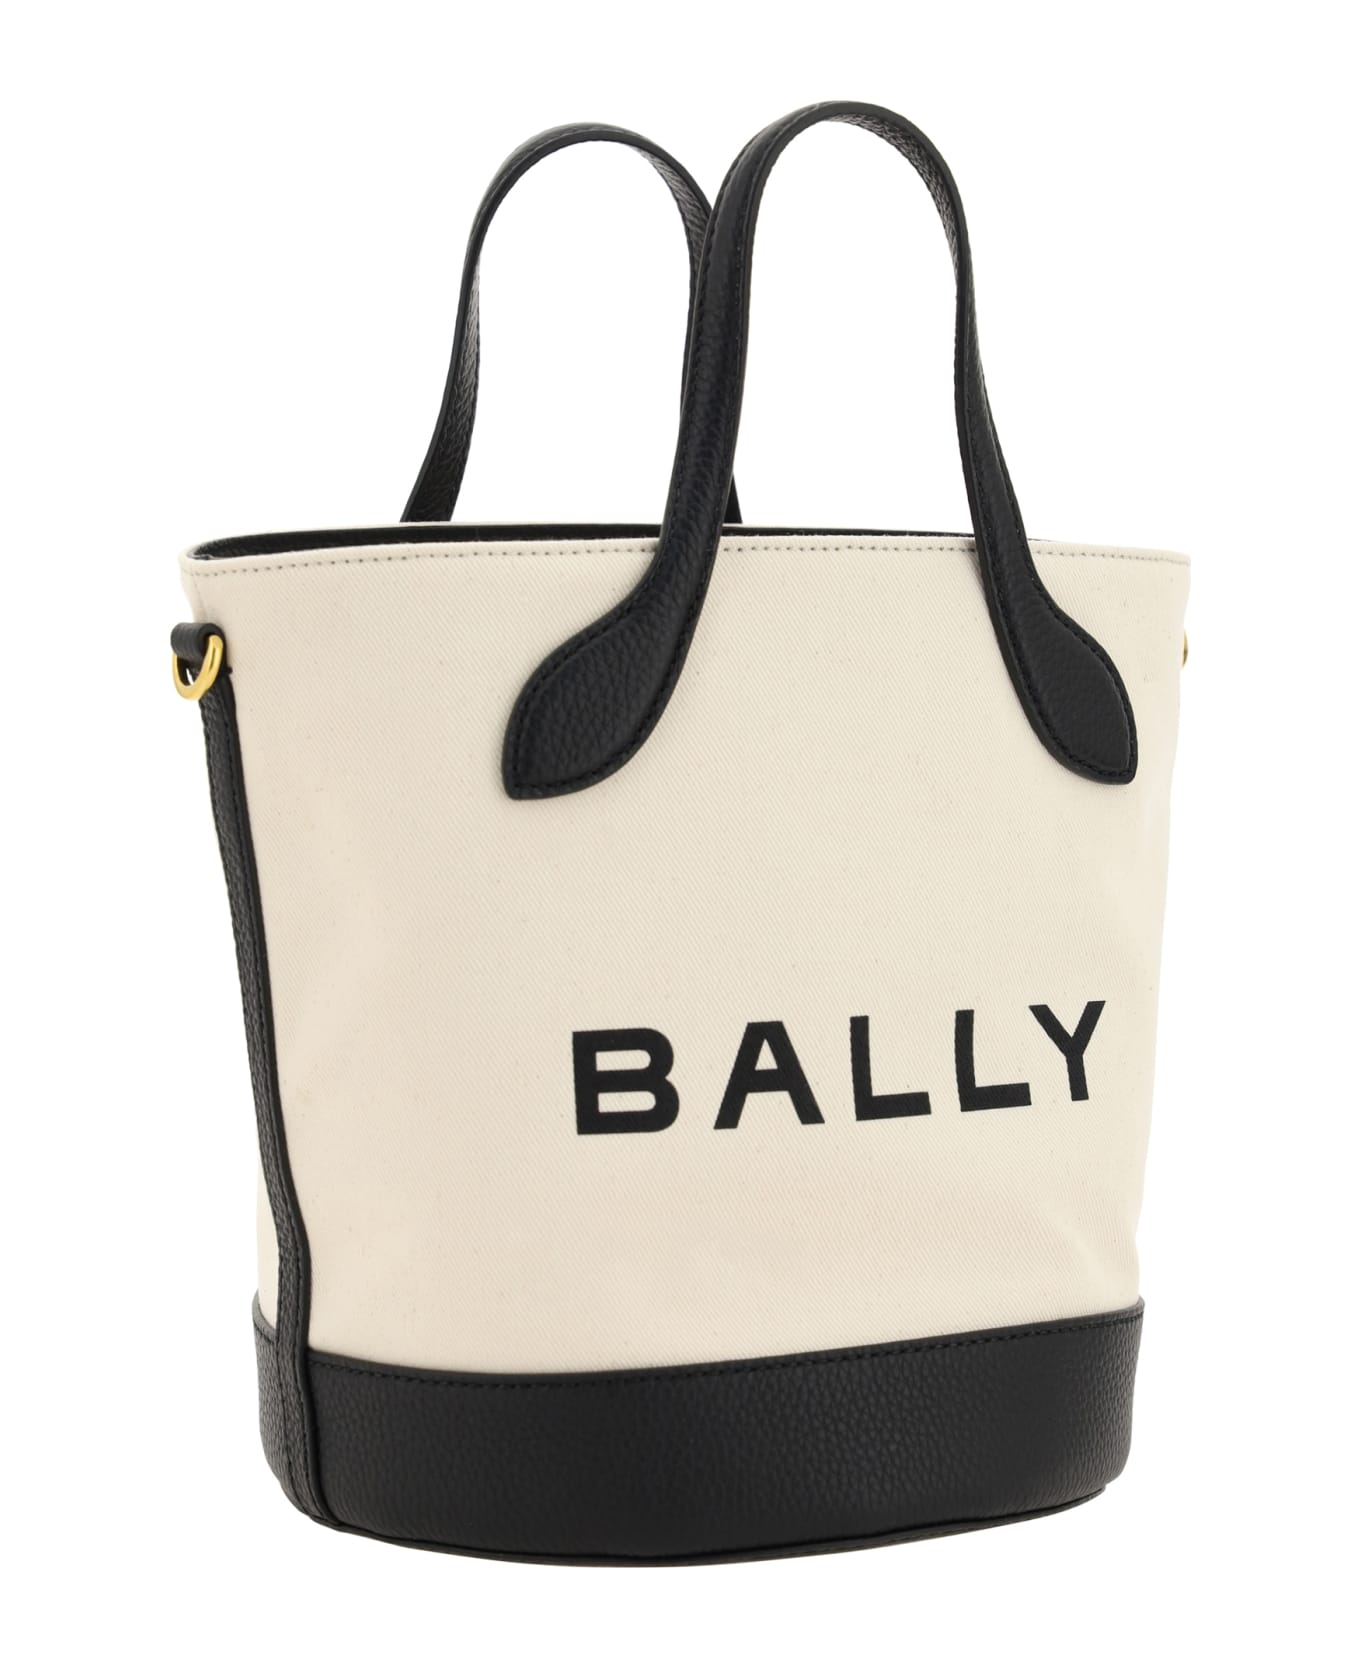 Bally Bucket Bag - NATURALBLACKORO